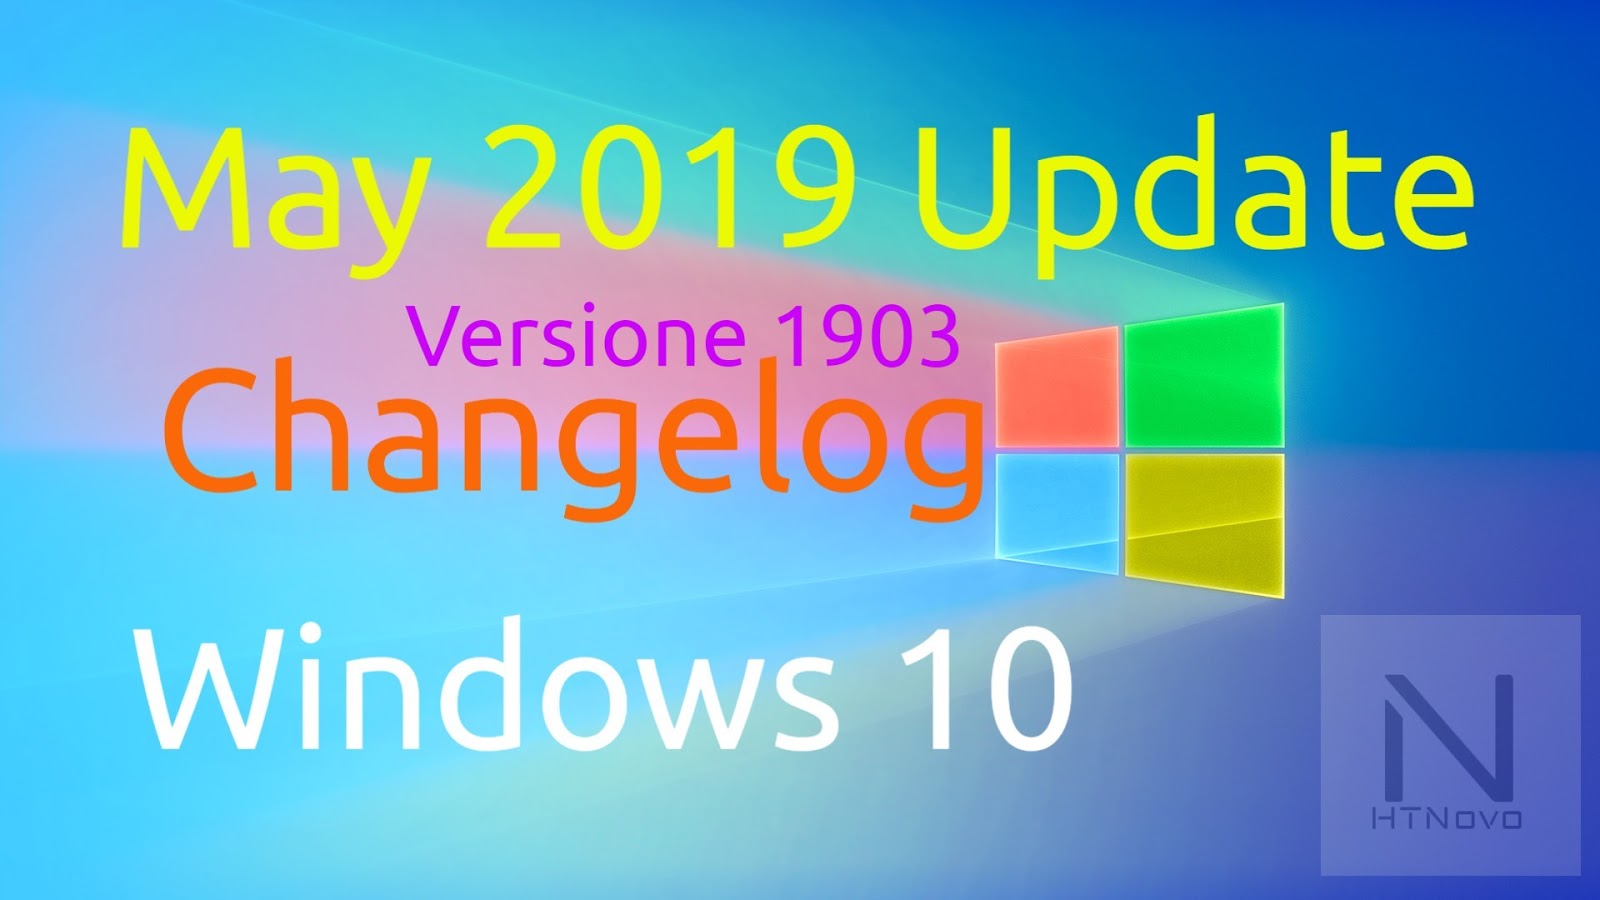 Changelog-Windows-10-Versione-1903-May-2019-Update